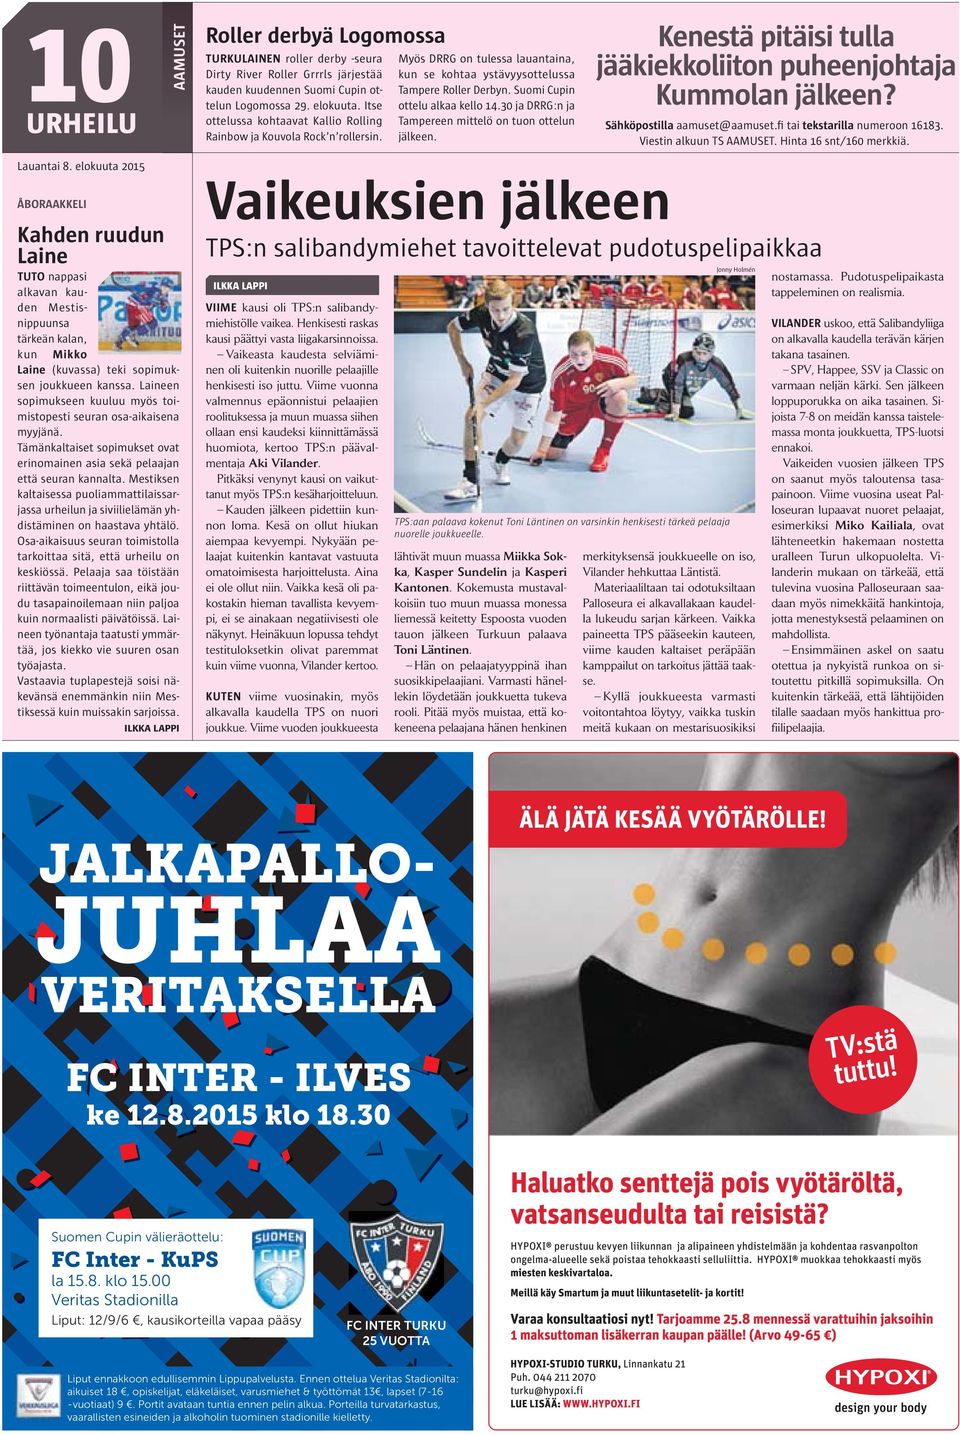 30 ja DRRG:n ja Tampereen mittelö on tuon ottelun jälkeen. Kenestä pitäisi tulla jääkiekkoliiton puheenjohtaja Kummolan jälkeen? Sähköpostilla aamuset@aamuset.fi tai tekstarilla numeroon 16183.